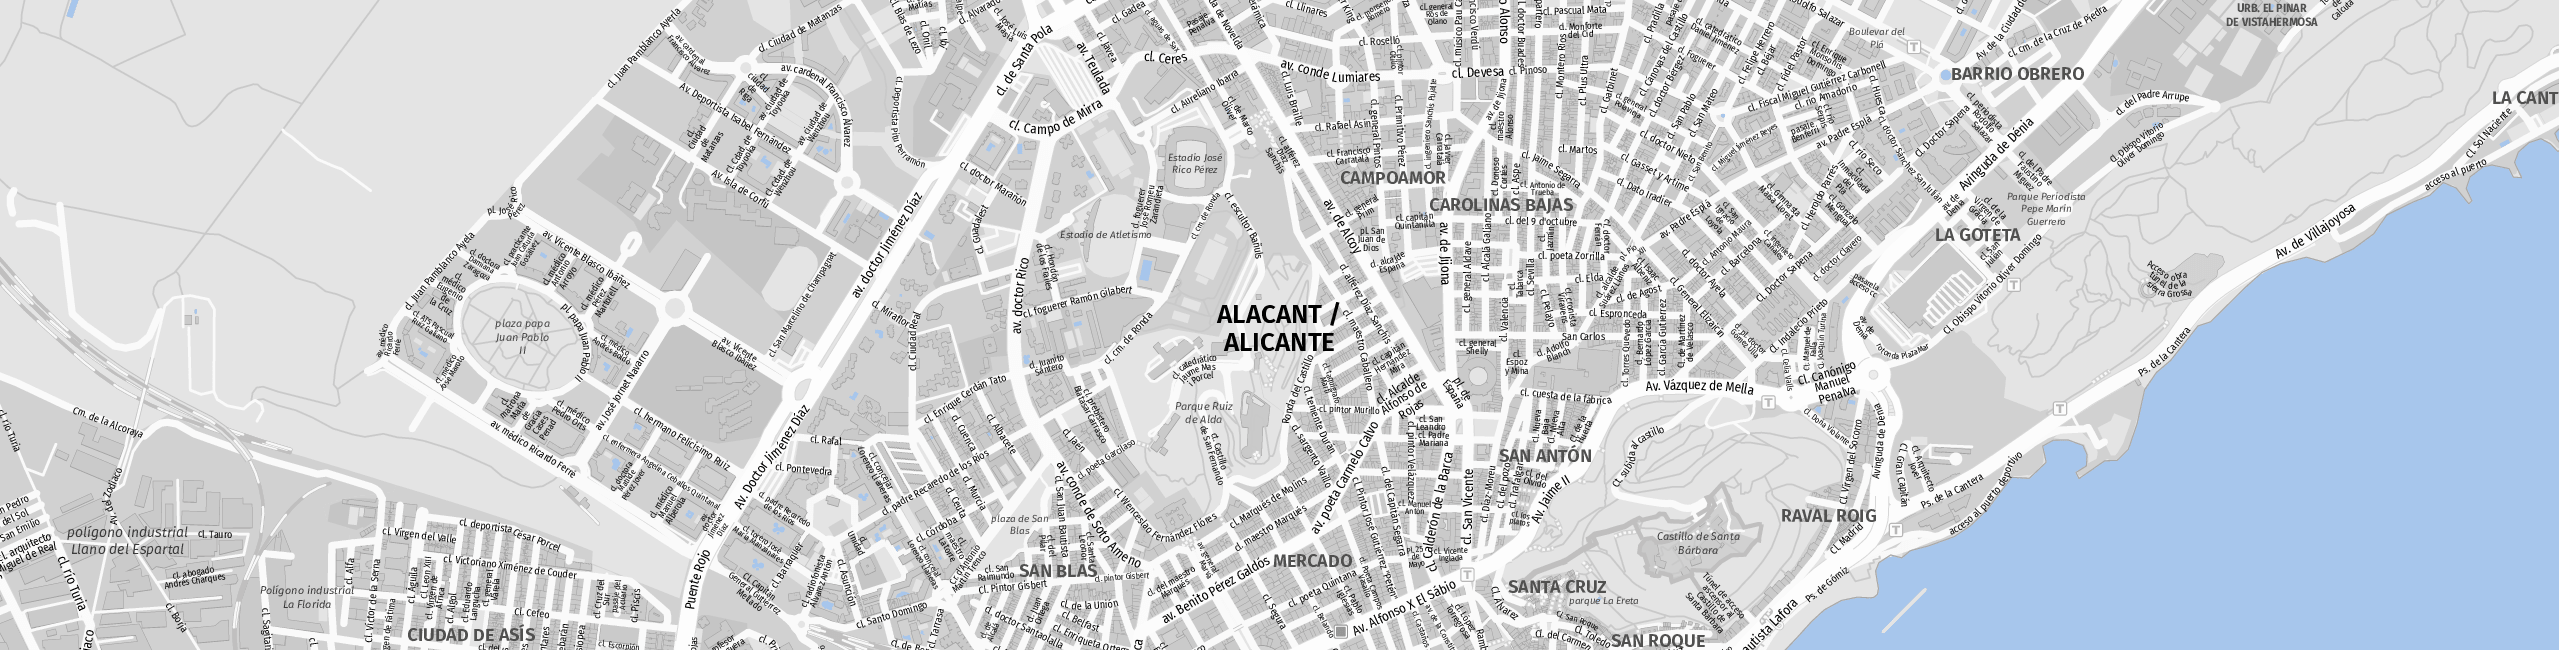 Stadtplan Alicante zum Downloaden.